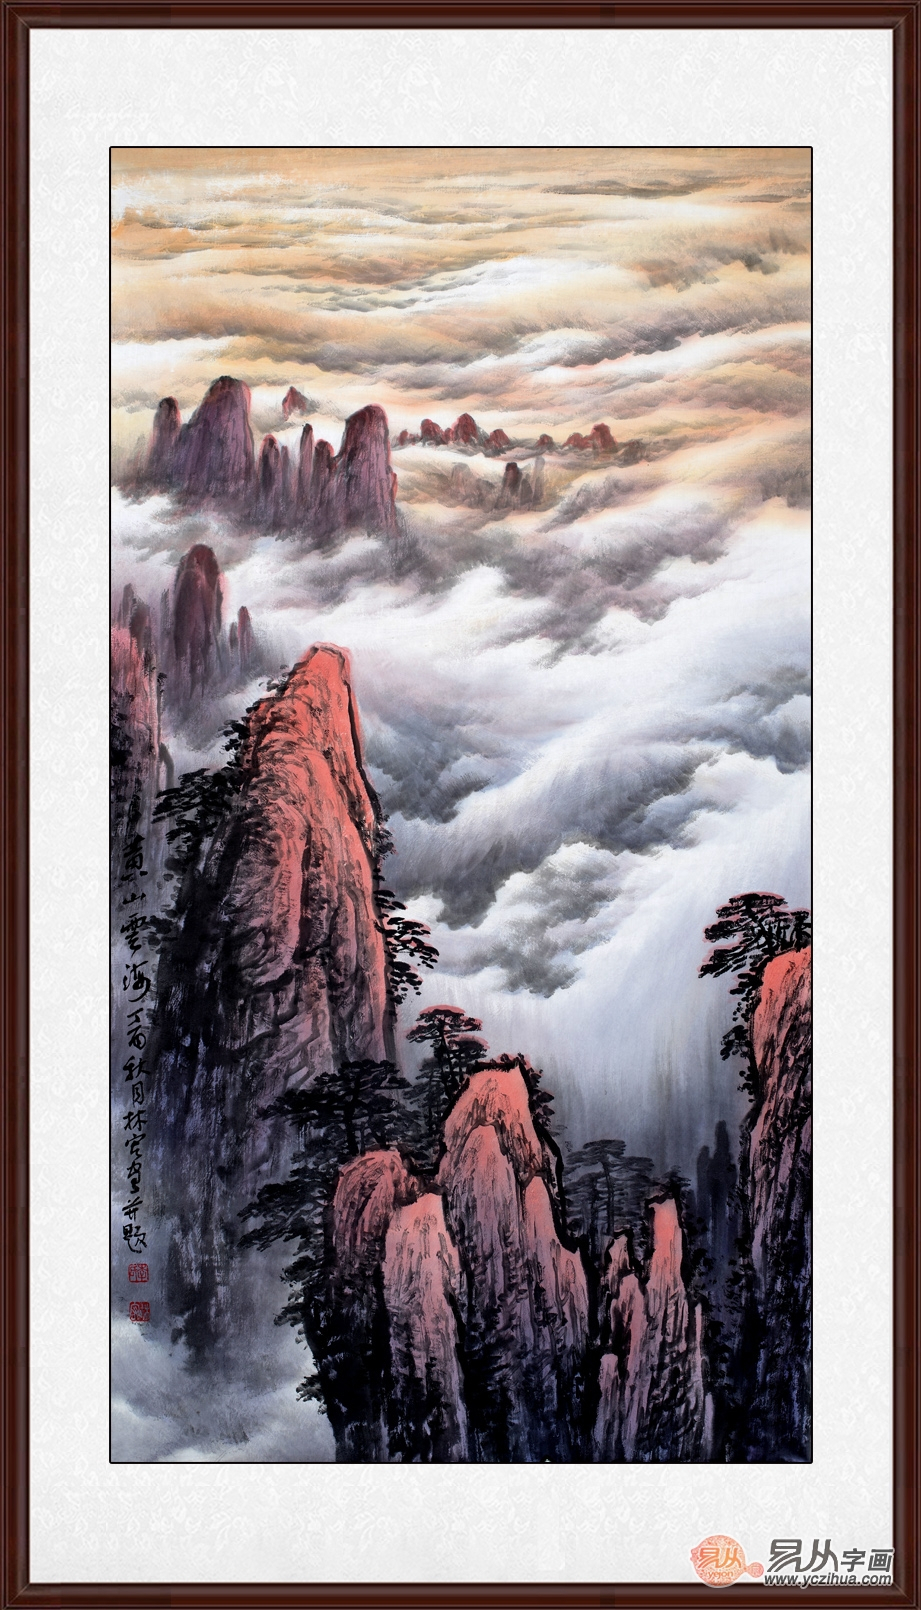 李林宏最新力作竖幅山水画作品《黄山云海》作品来源:易从网